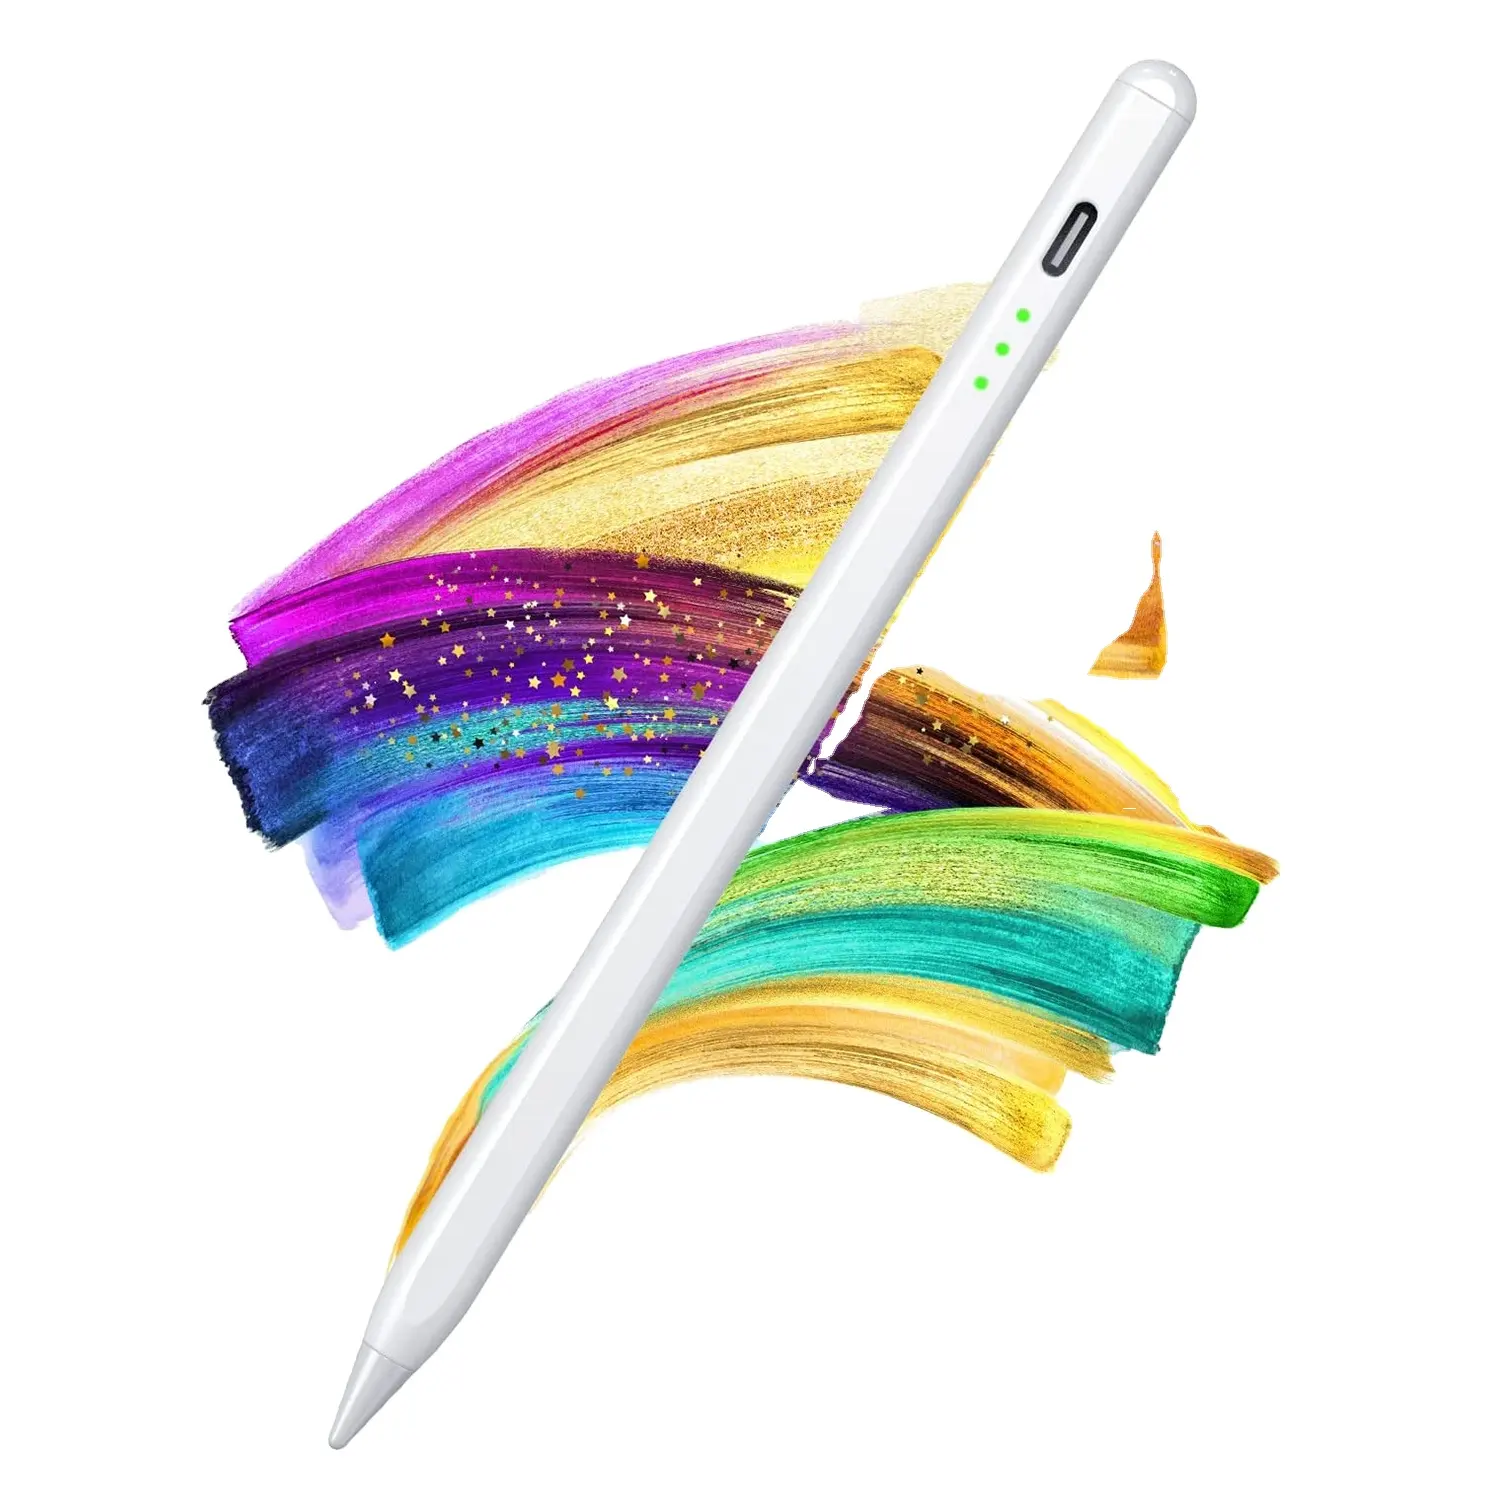 ปากกาสไตลัสแบบมีแม่เหล็กสำหรับ iPad ปากกาสไตลัสแบบปรับเอียงเป็นตัวบ่งชี้สถานะแบตเตอรี่